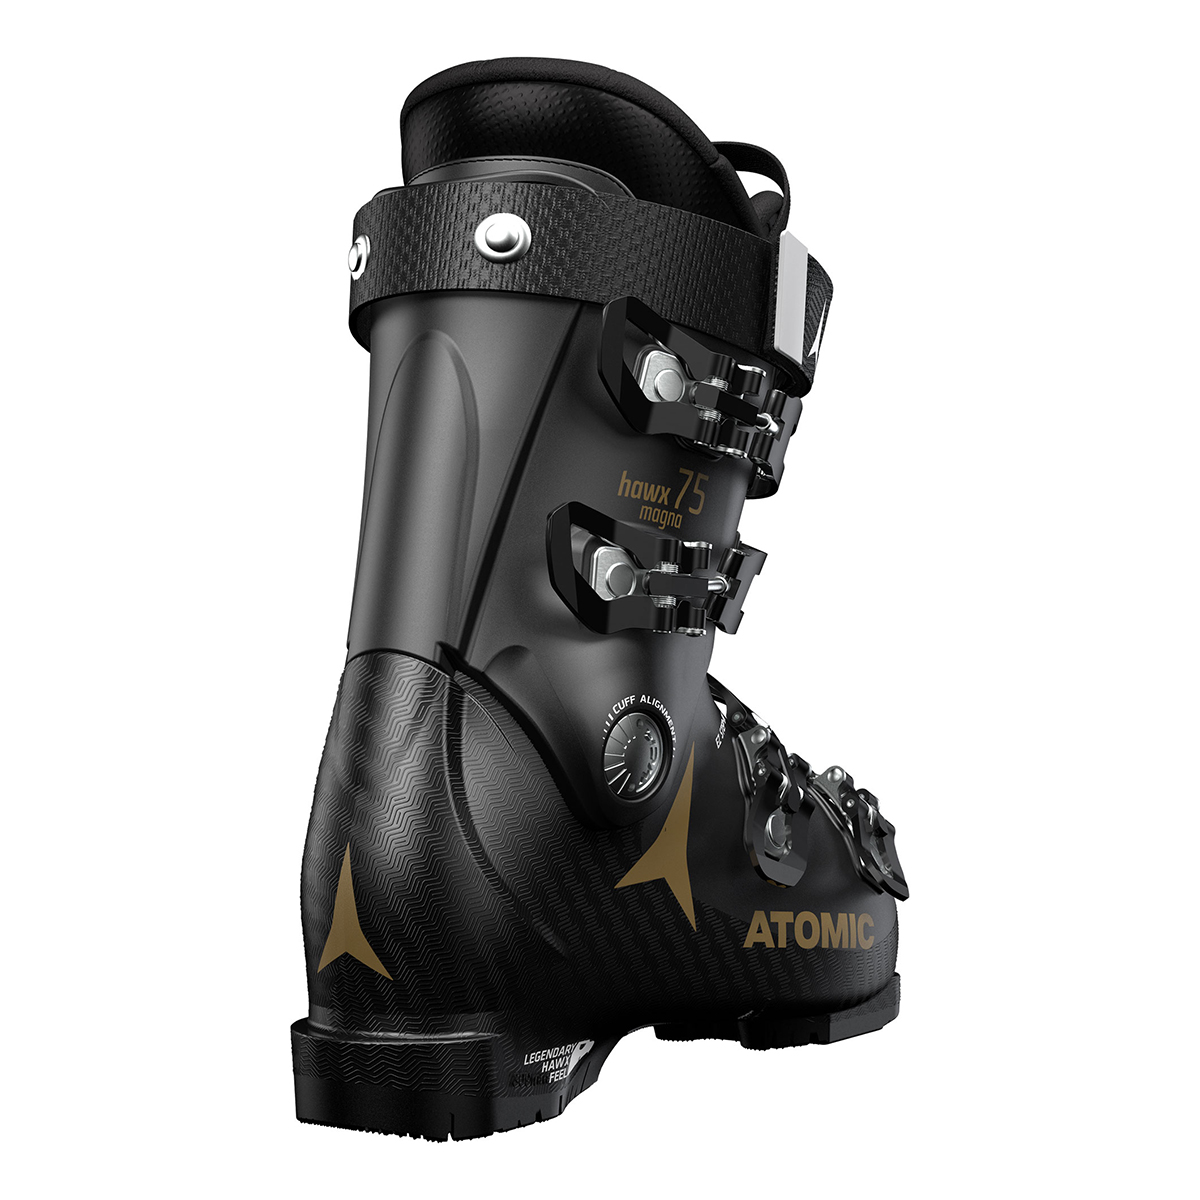 Ботинки горнолыжные Atomic 19-20 Hawx Magna 75 W Black/Gold, цвет черный, размер 27,0/27,5 см AE5018620 - фото 2